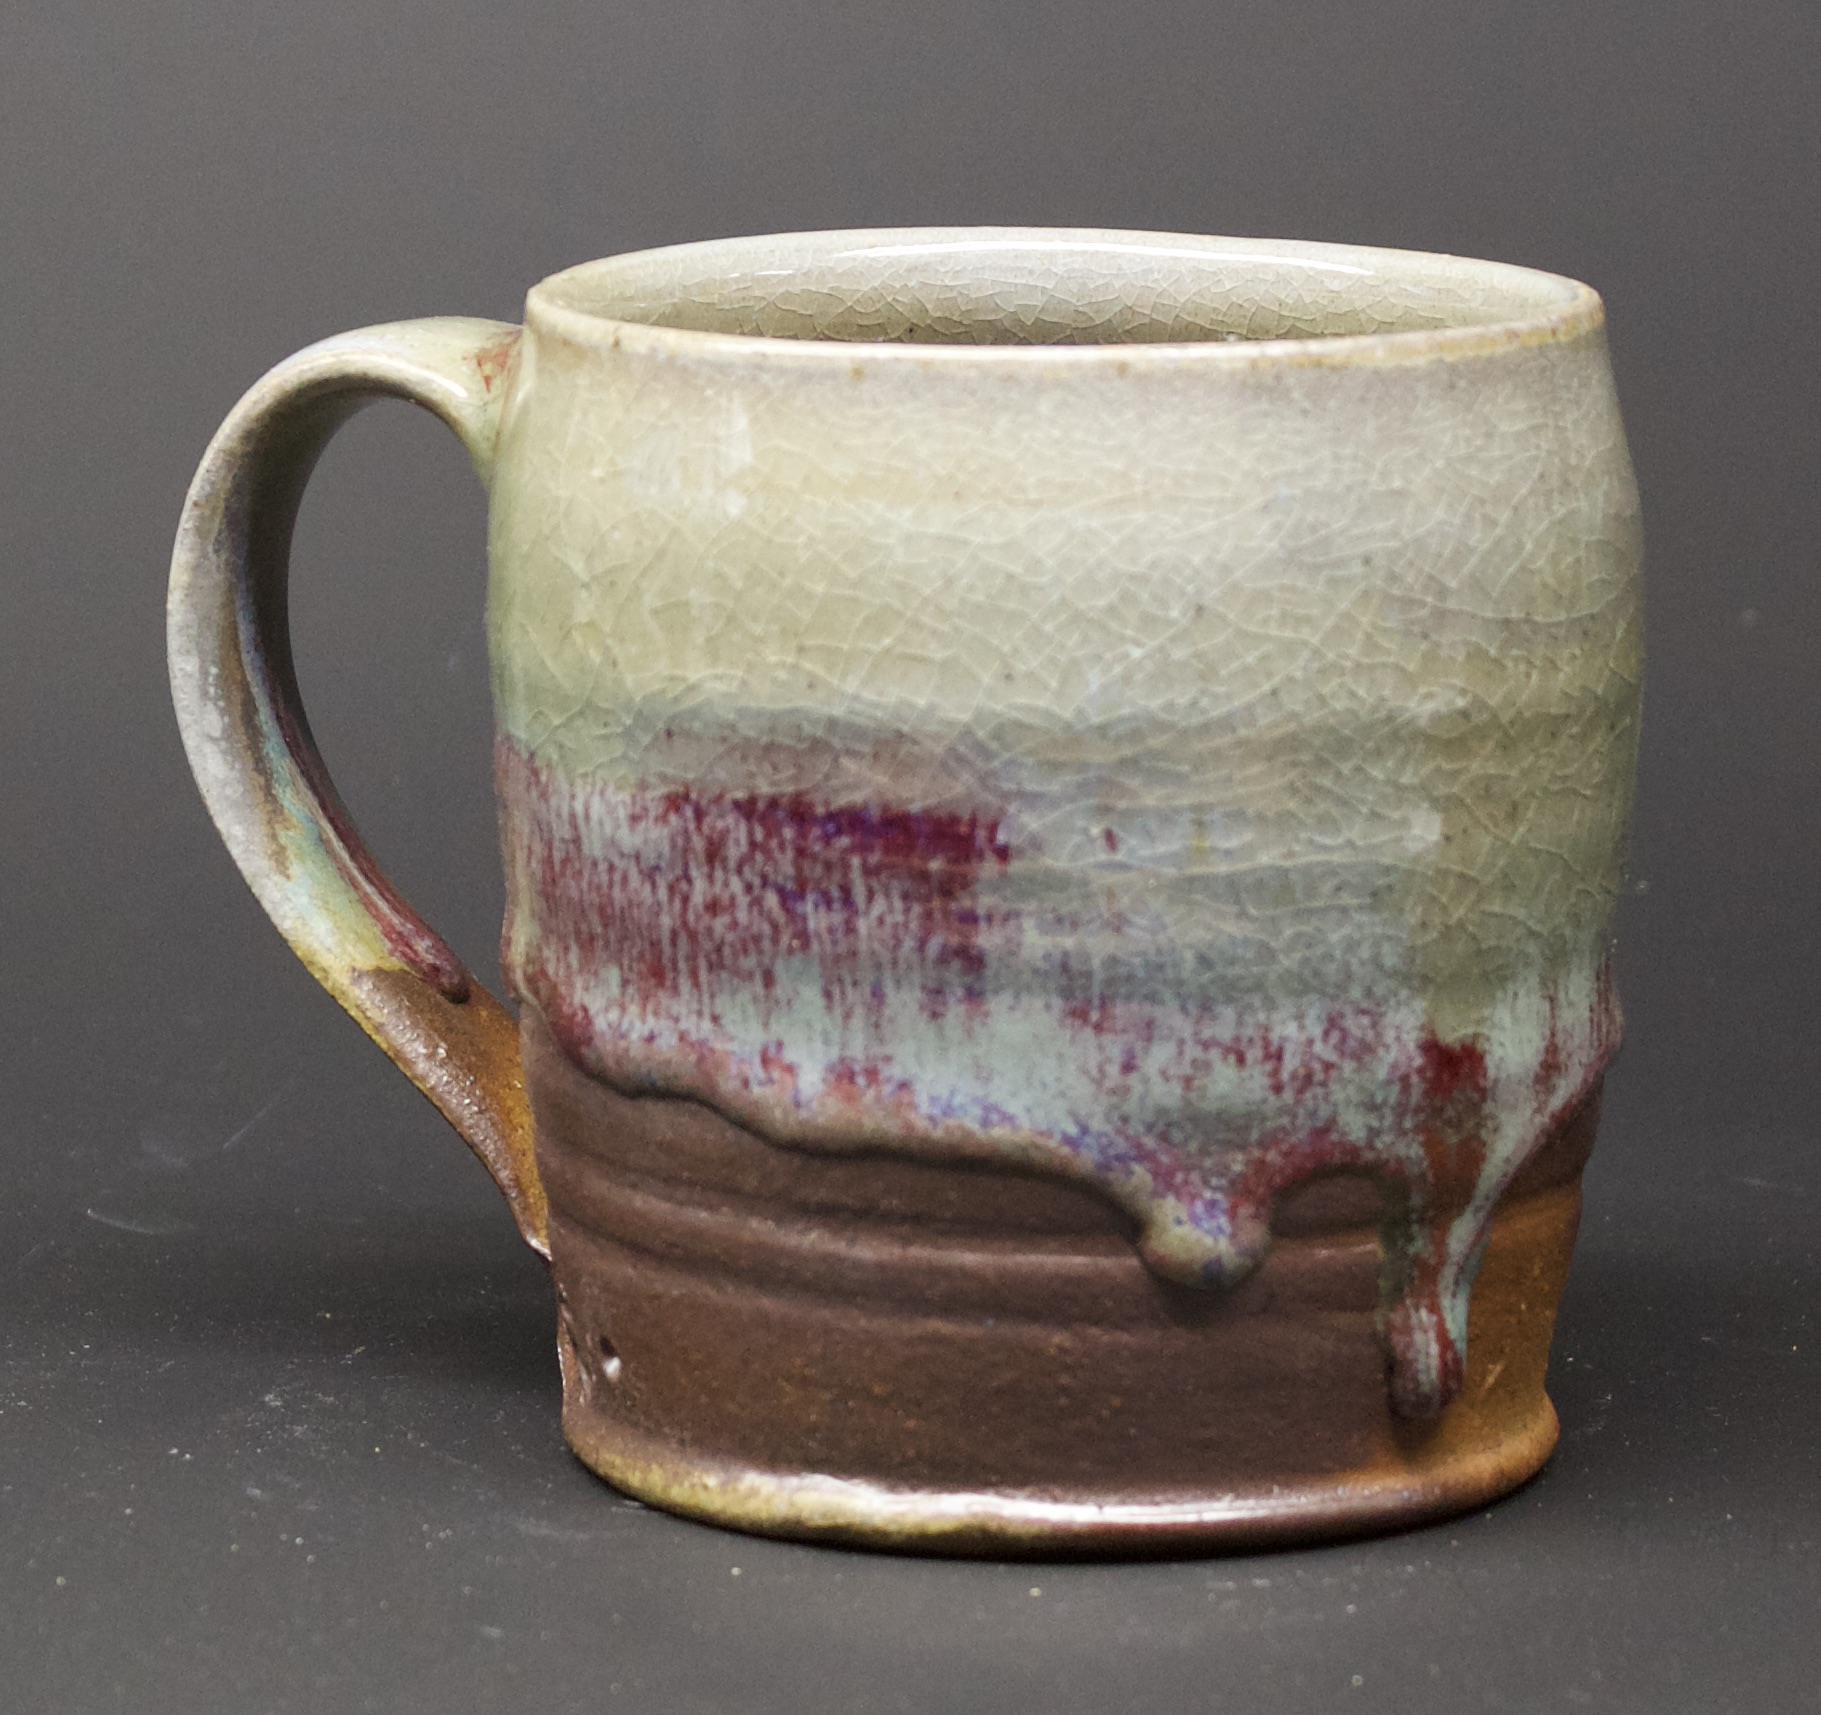 36. Mug, Oribe & red glaze
4" x 4"
$50